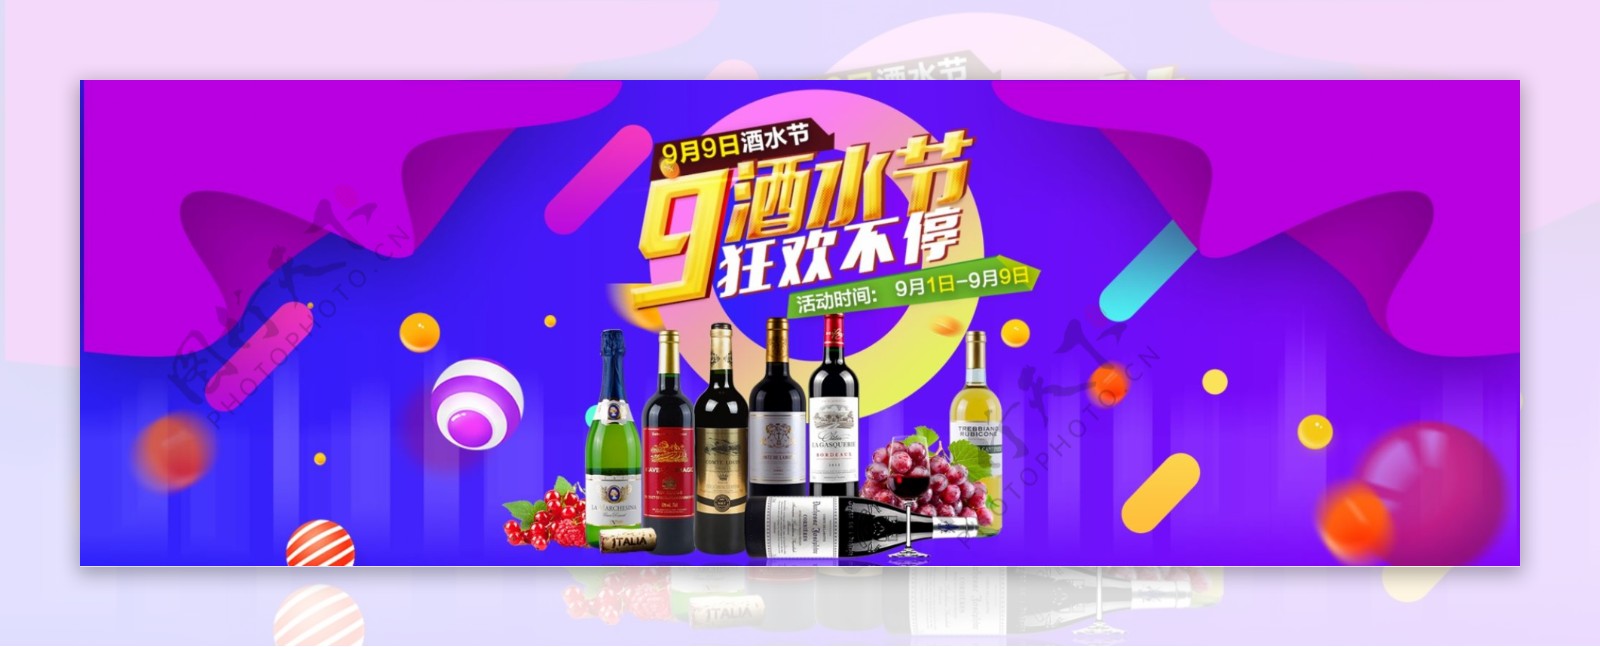 电商淘宝天猫全球酒水节促销活动海报banner模板设计酒水海报背景模板